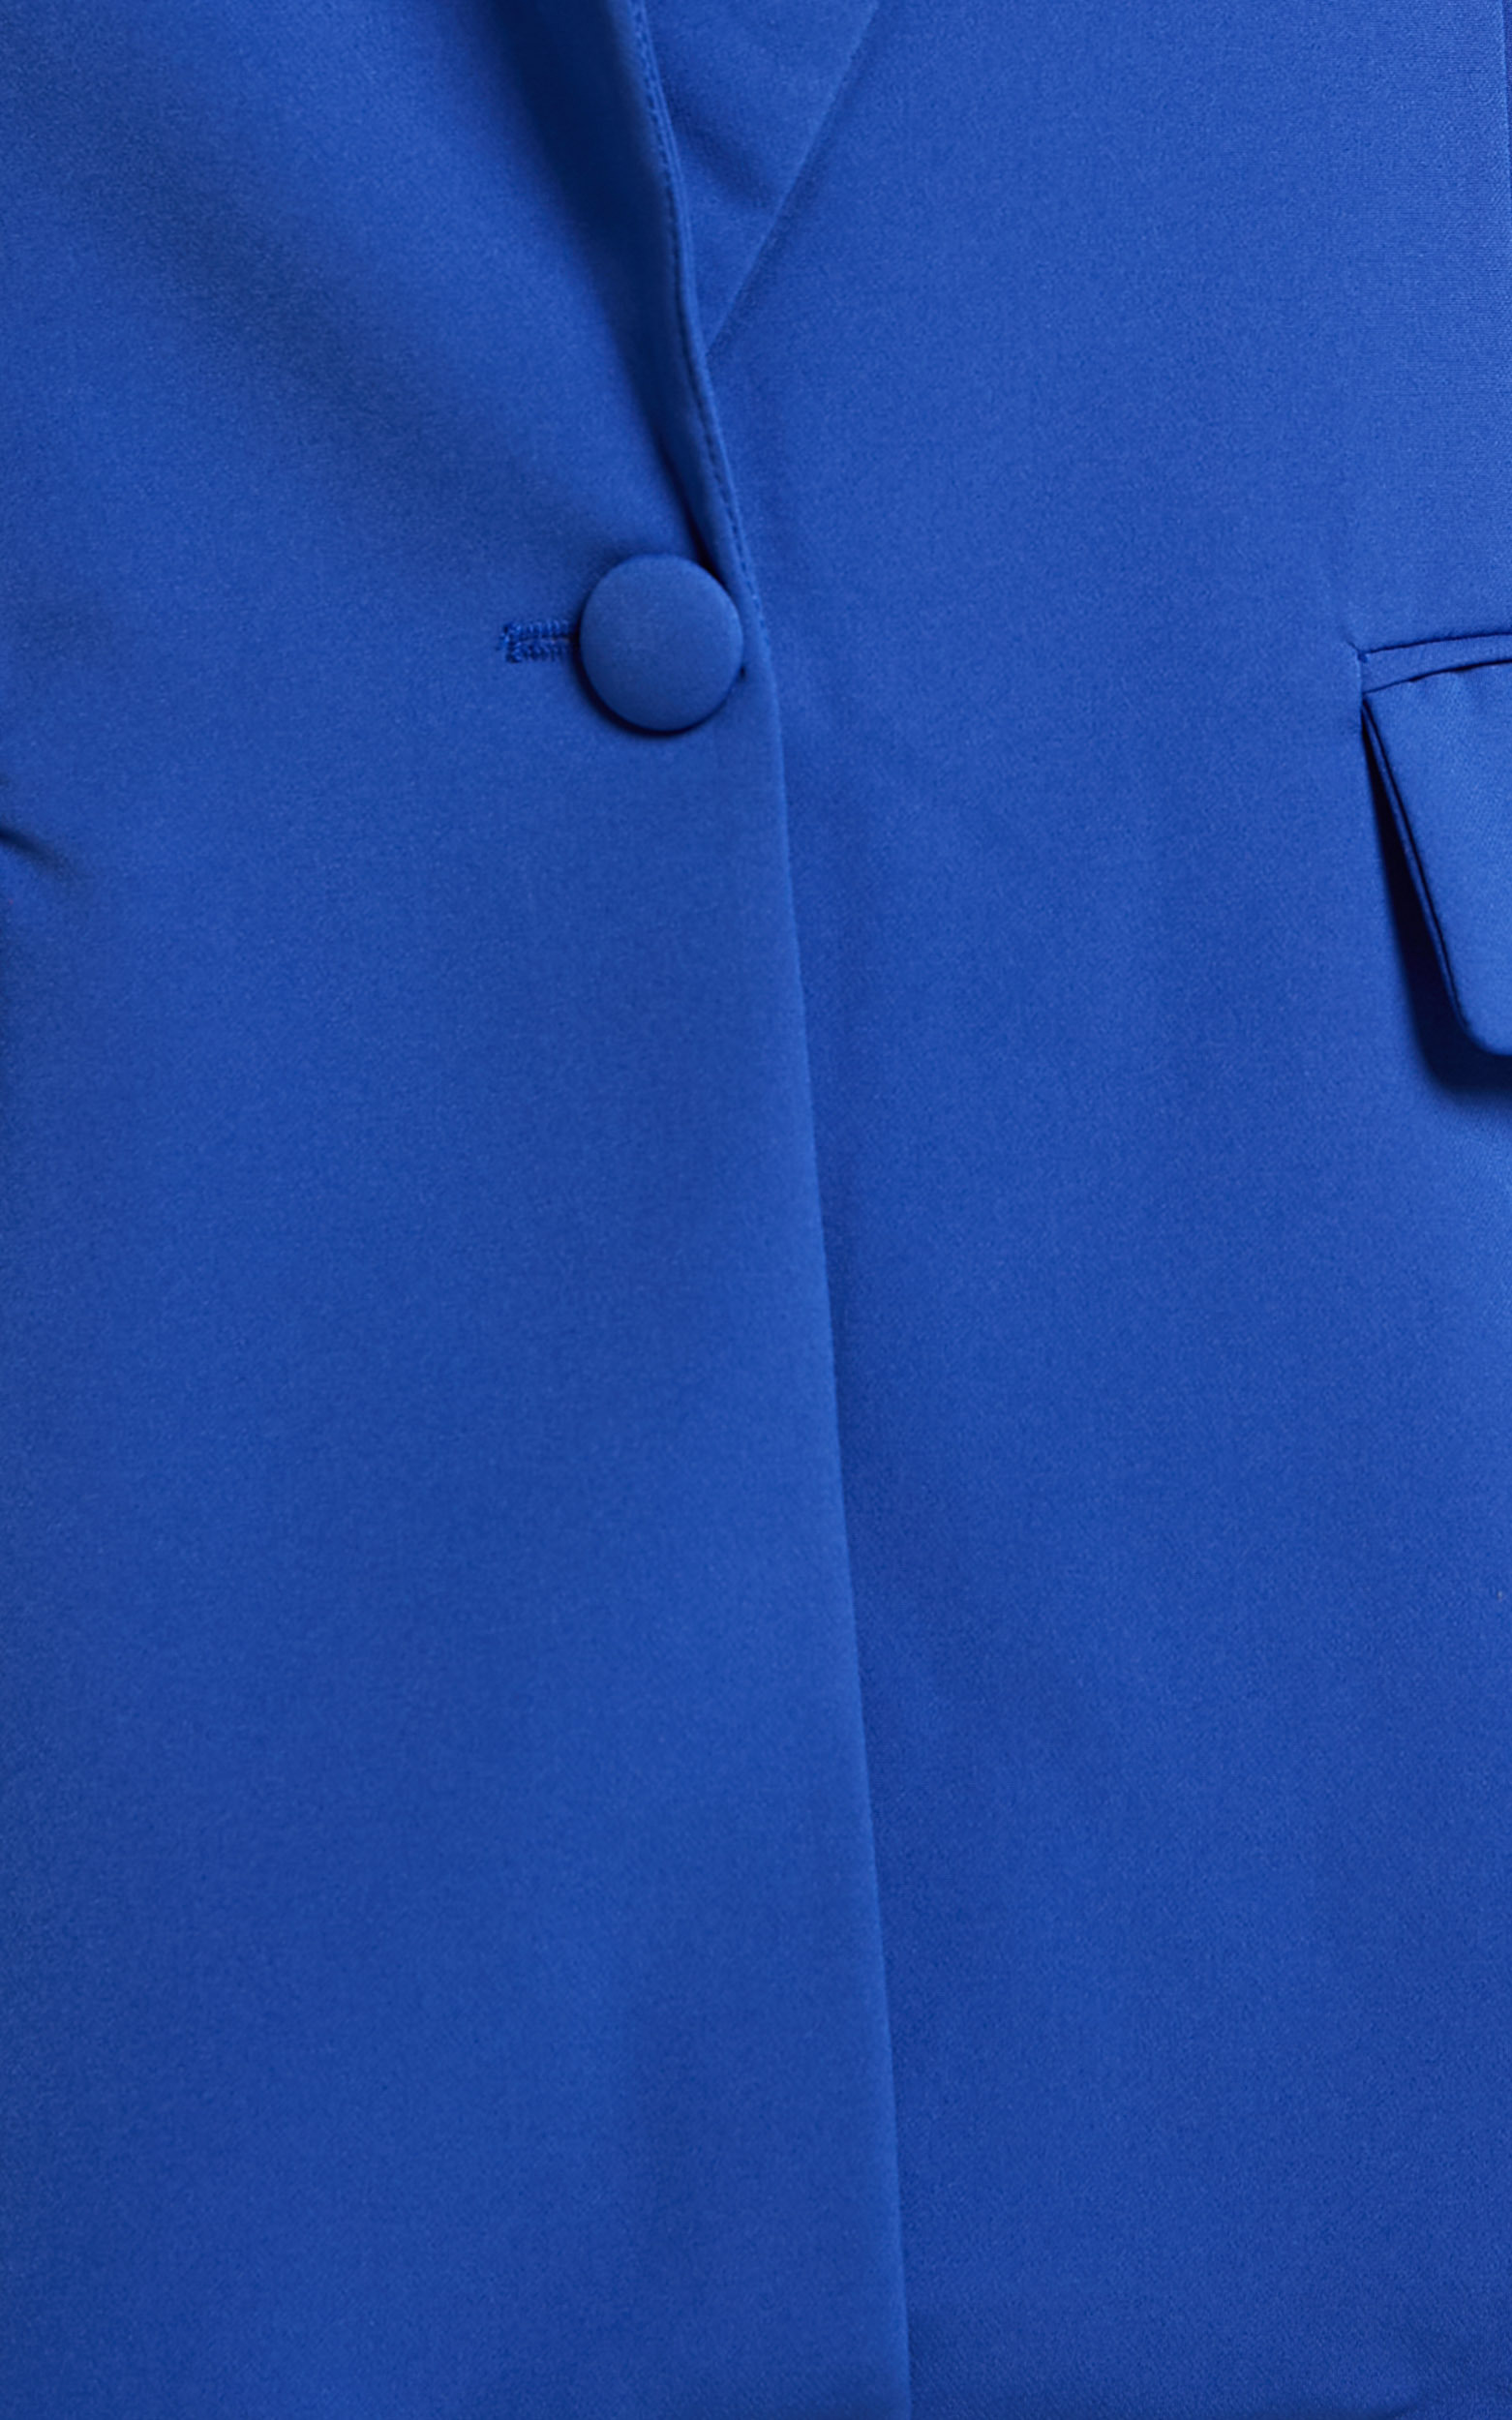 Sharmiel Blazer - Plunge Neck Oversized Longline Blazer in Cobalt Blue ...